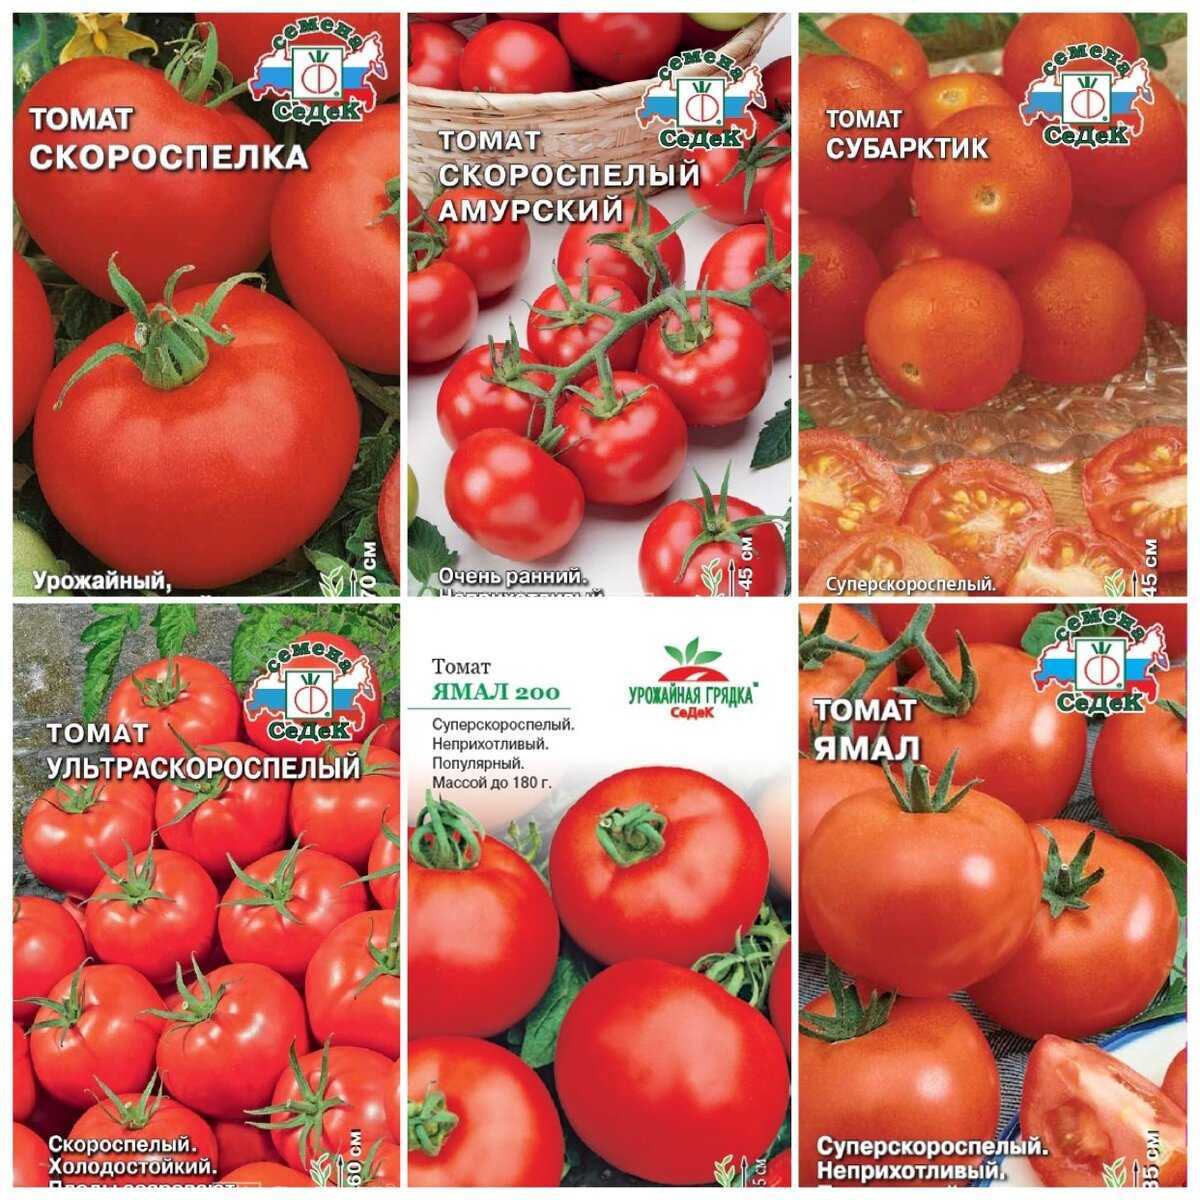 Обзор сортов или видов помидоров для теплицы, огорода и подоконника